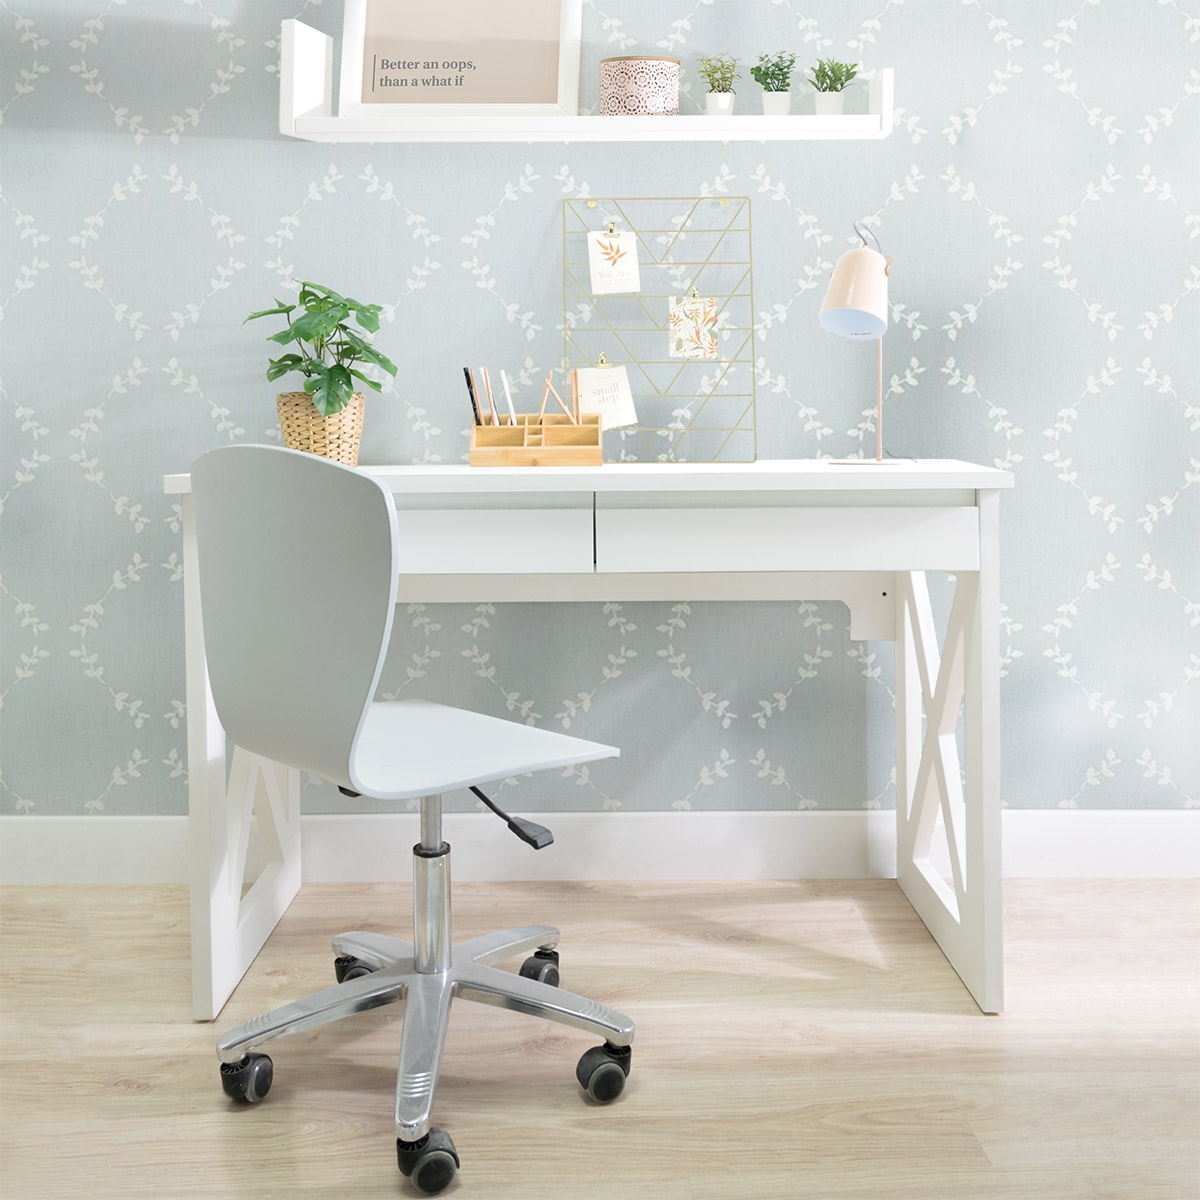 Mesa escritorio de calidad con cajones